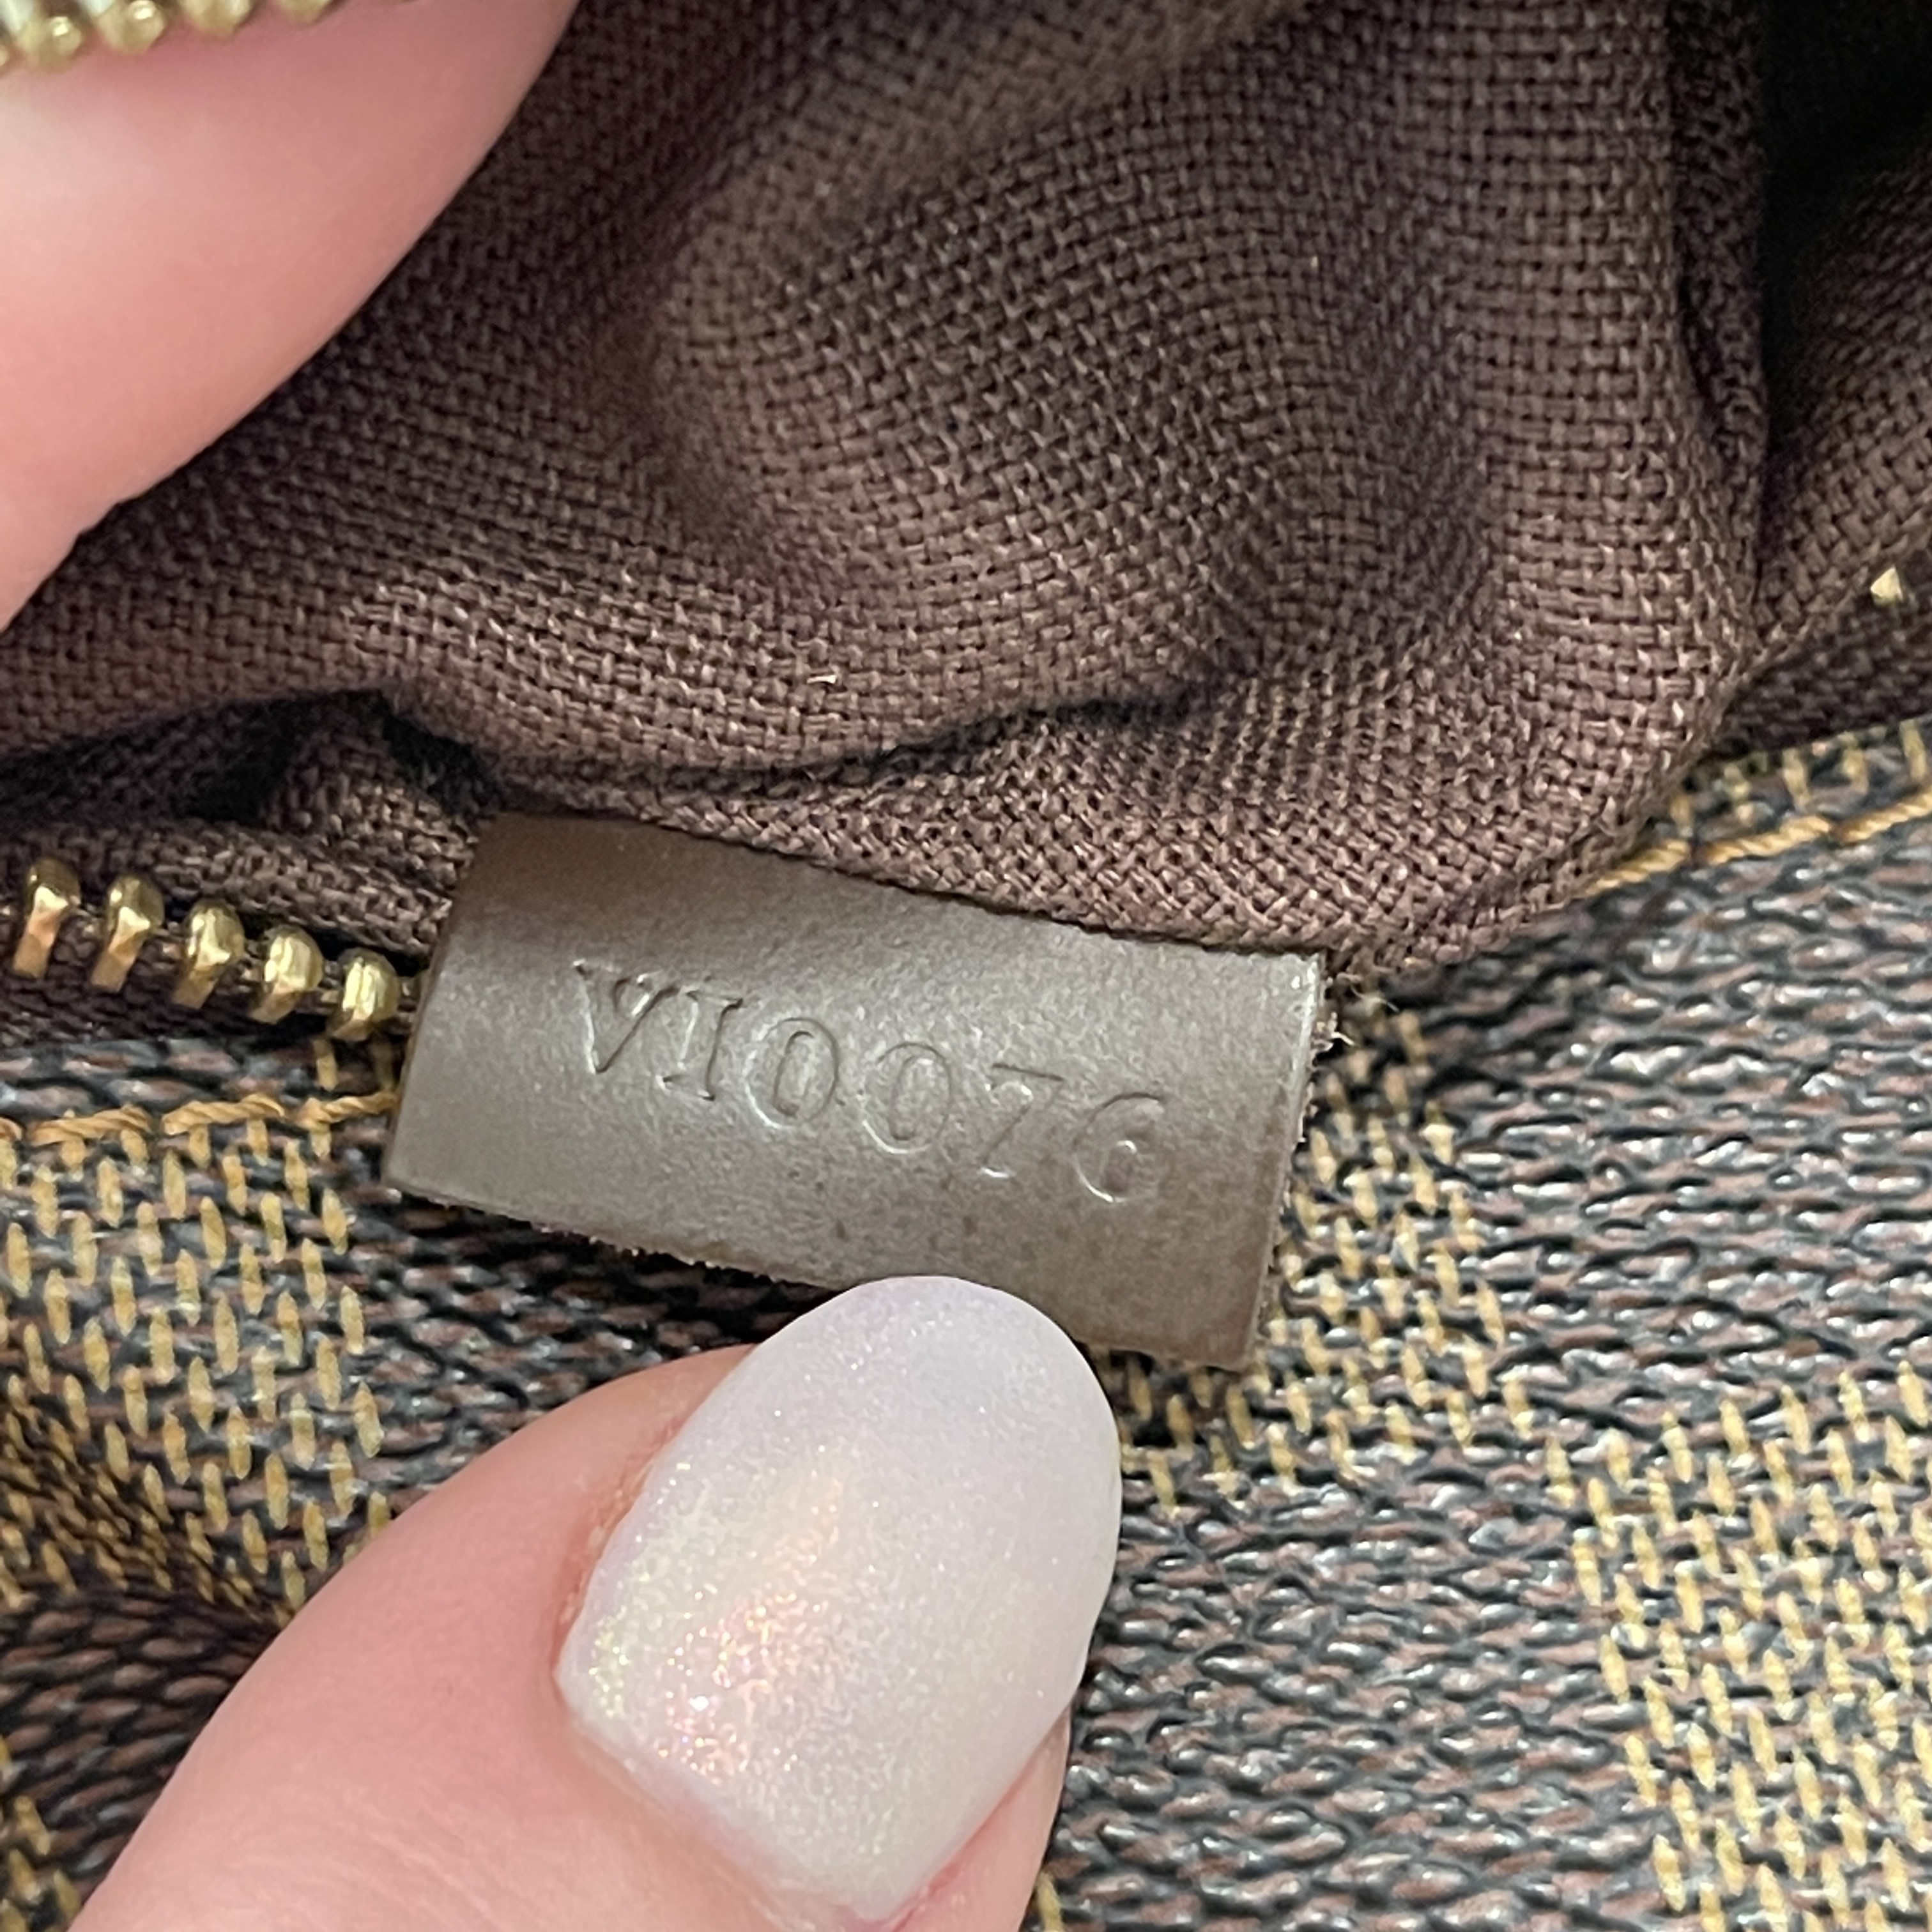 Shop authentic Louis Vuitton Damier Ebene Melville Waist Bag at revogue for  just USD 1,050.00